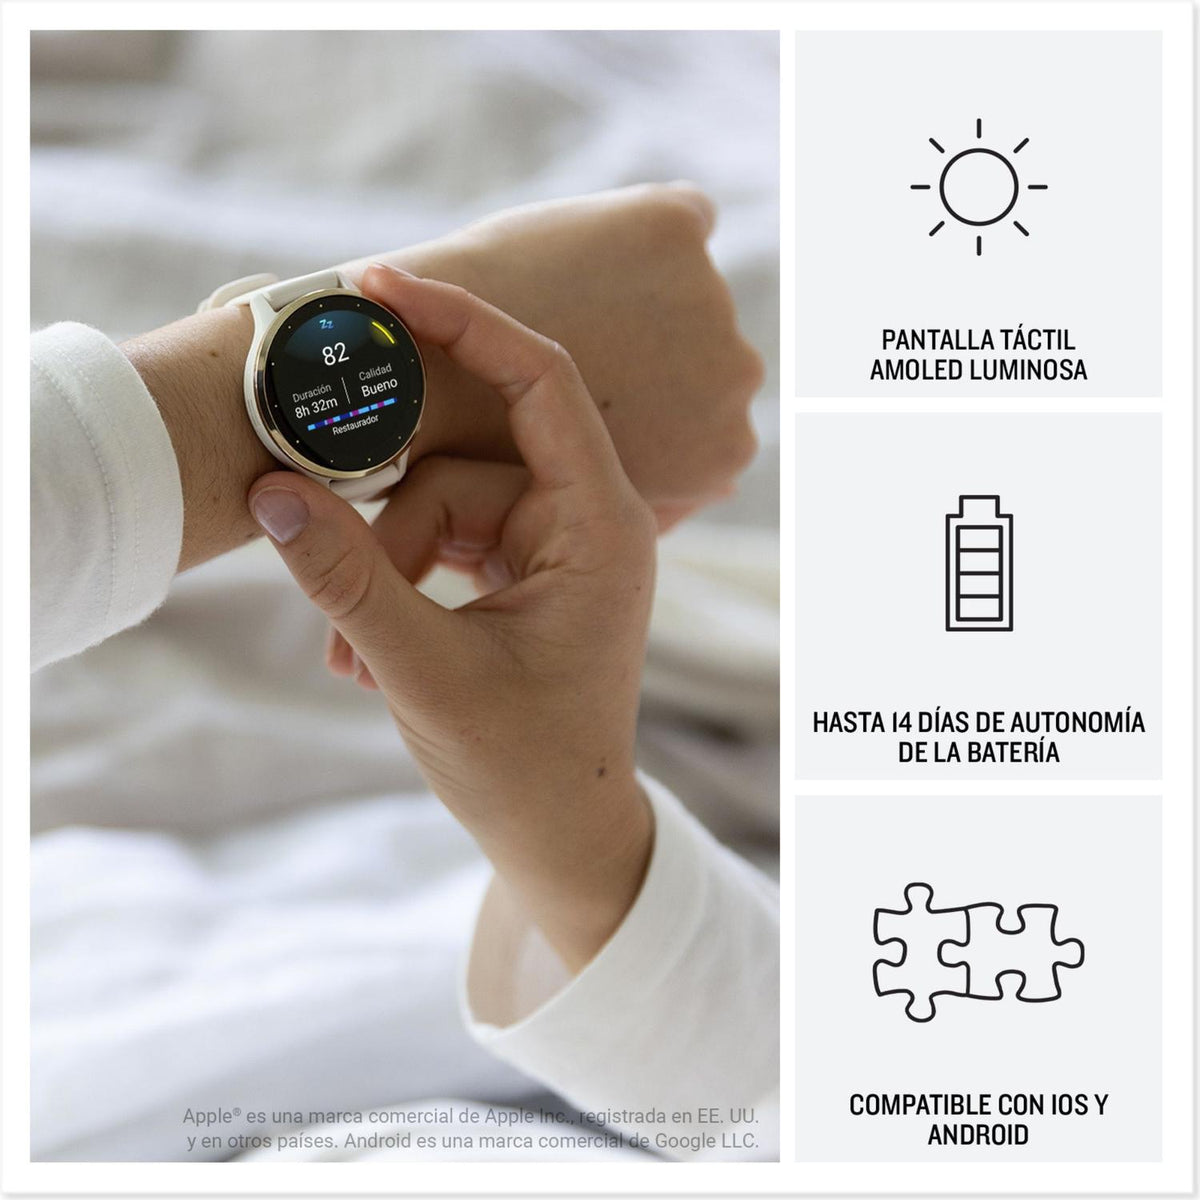 Garmin Reloj Inteligente Smartwatch Venu 3 con GPS - vertikal